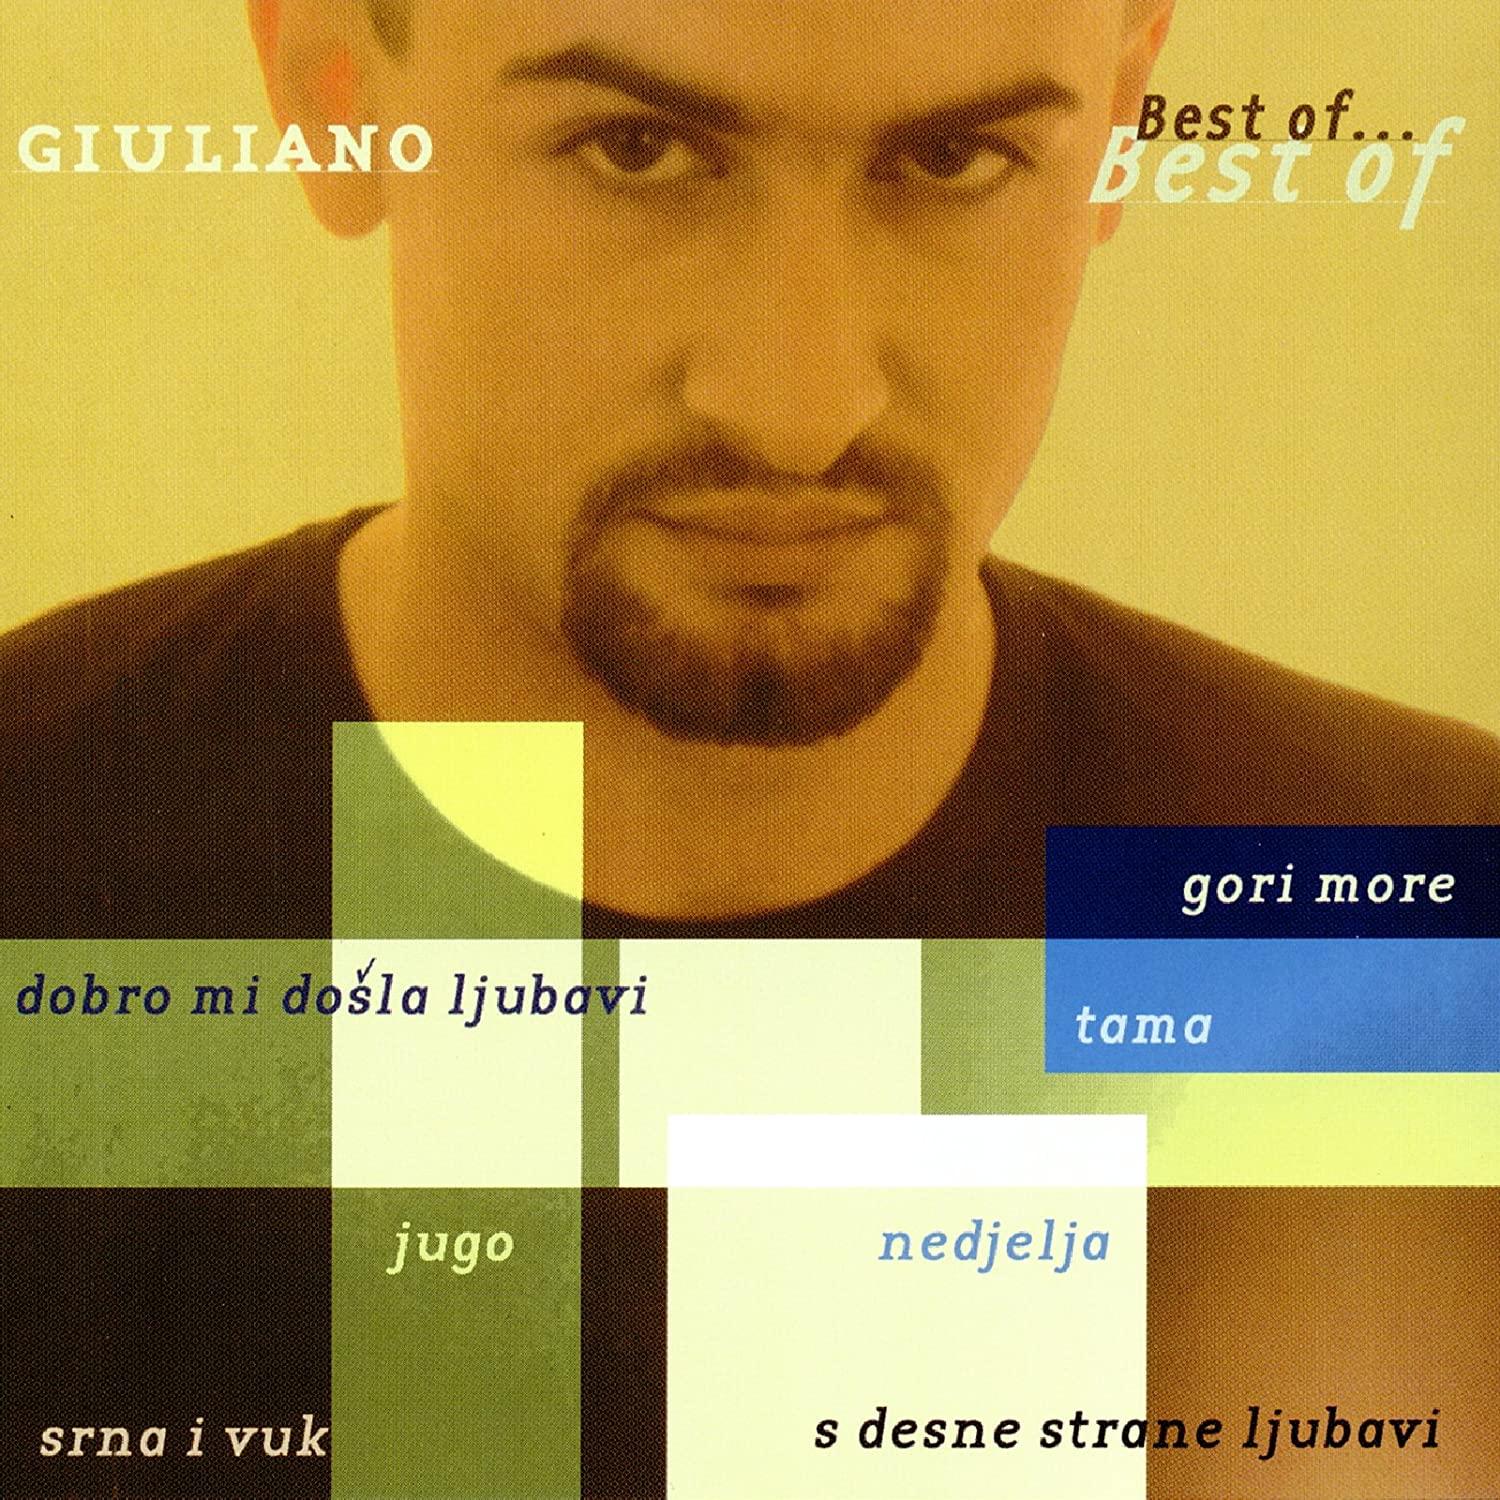 GIULIANO - Best of